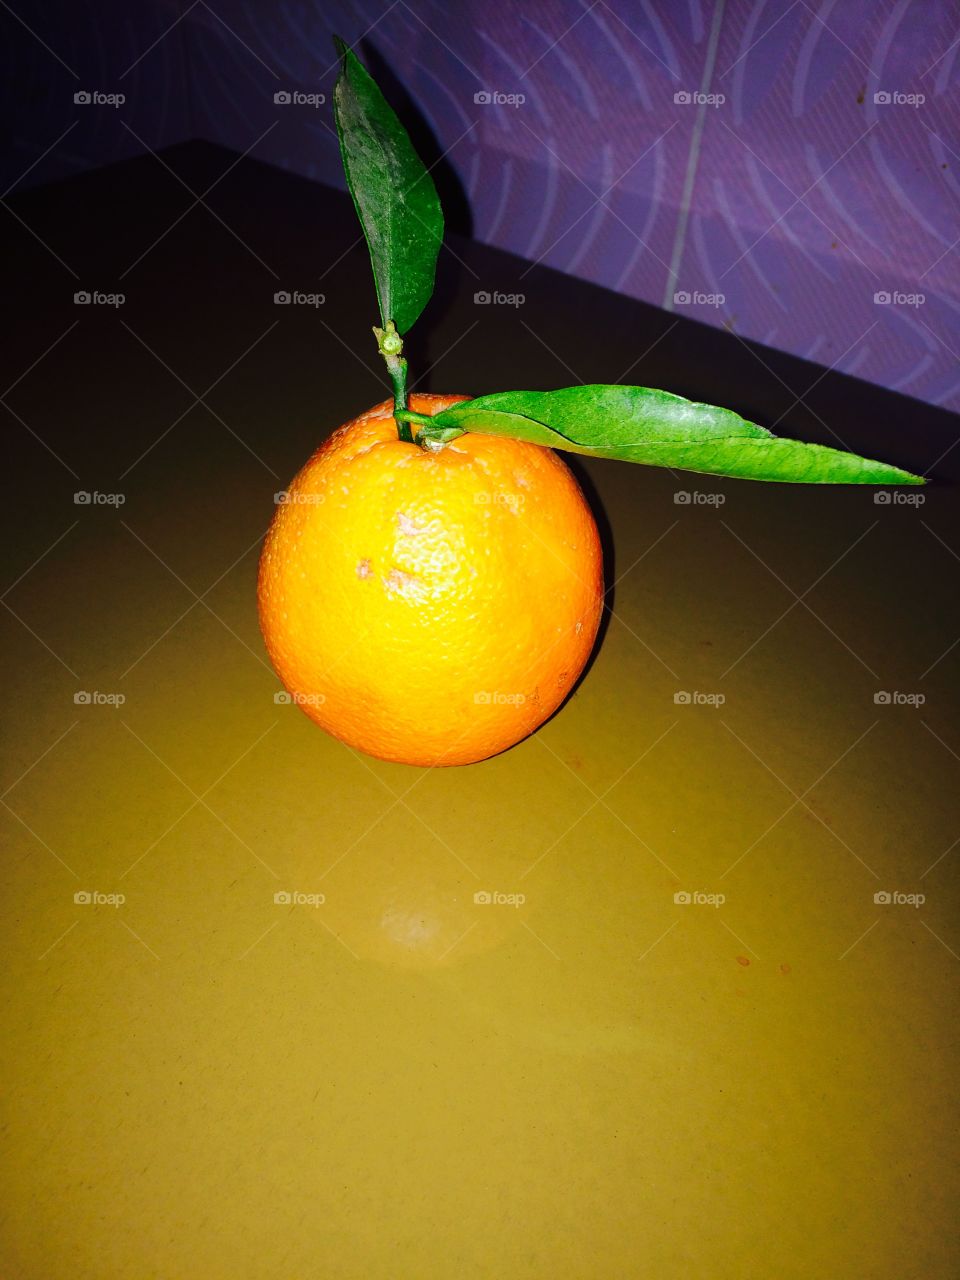 Orange @foap #food